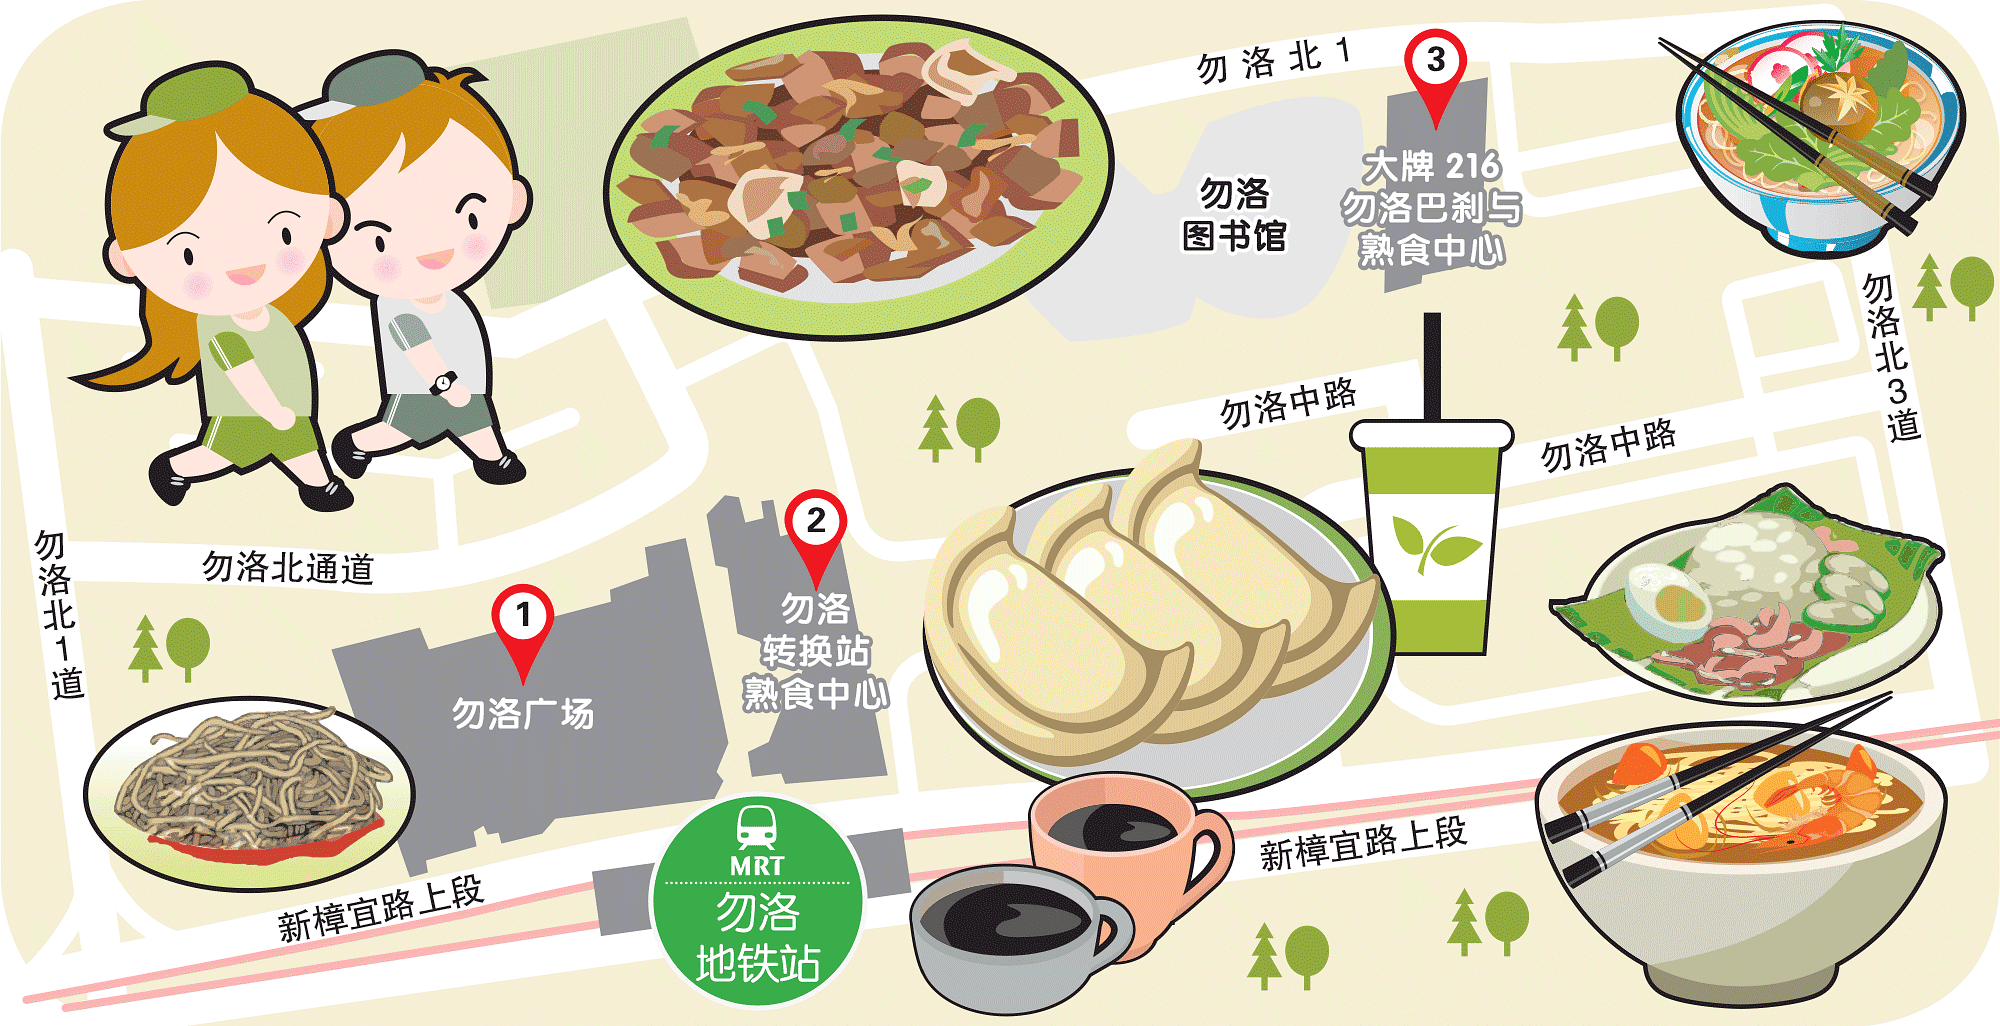 Wanbao Food Search @Bedok MRT Station